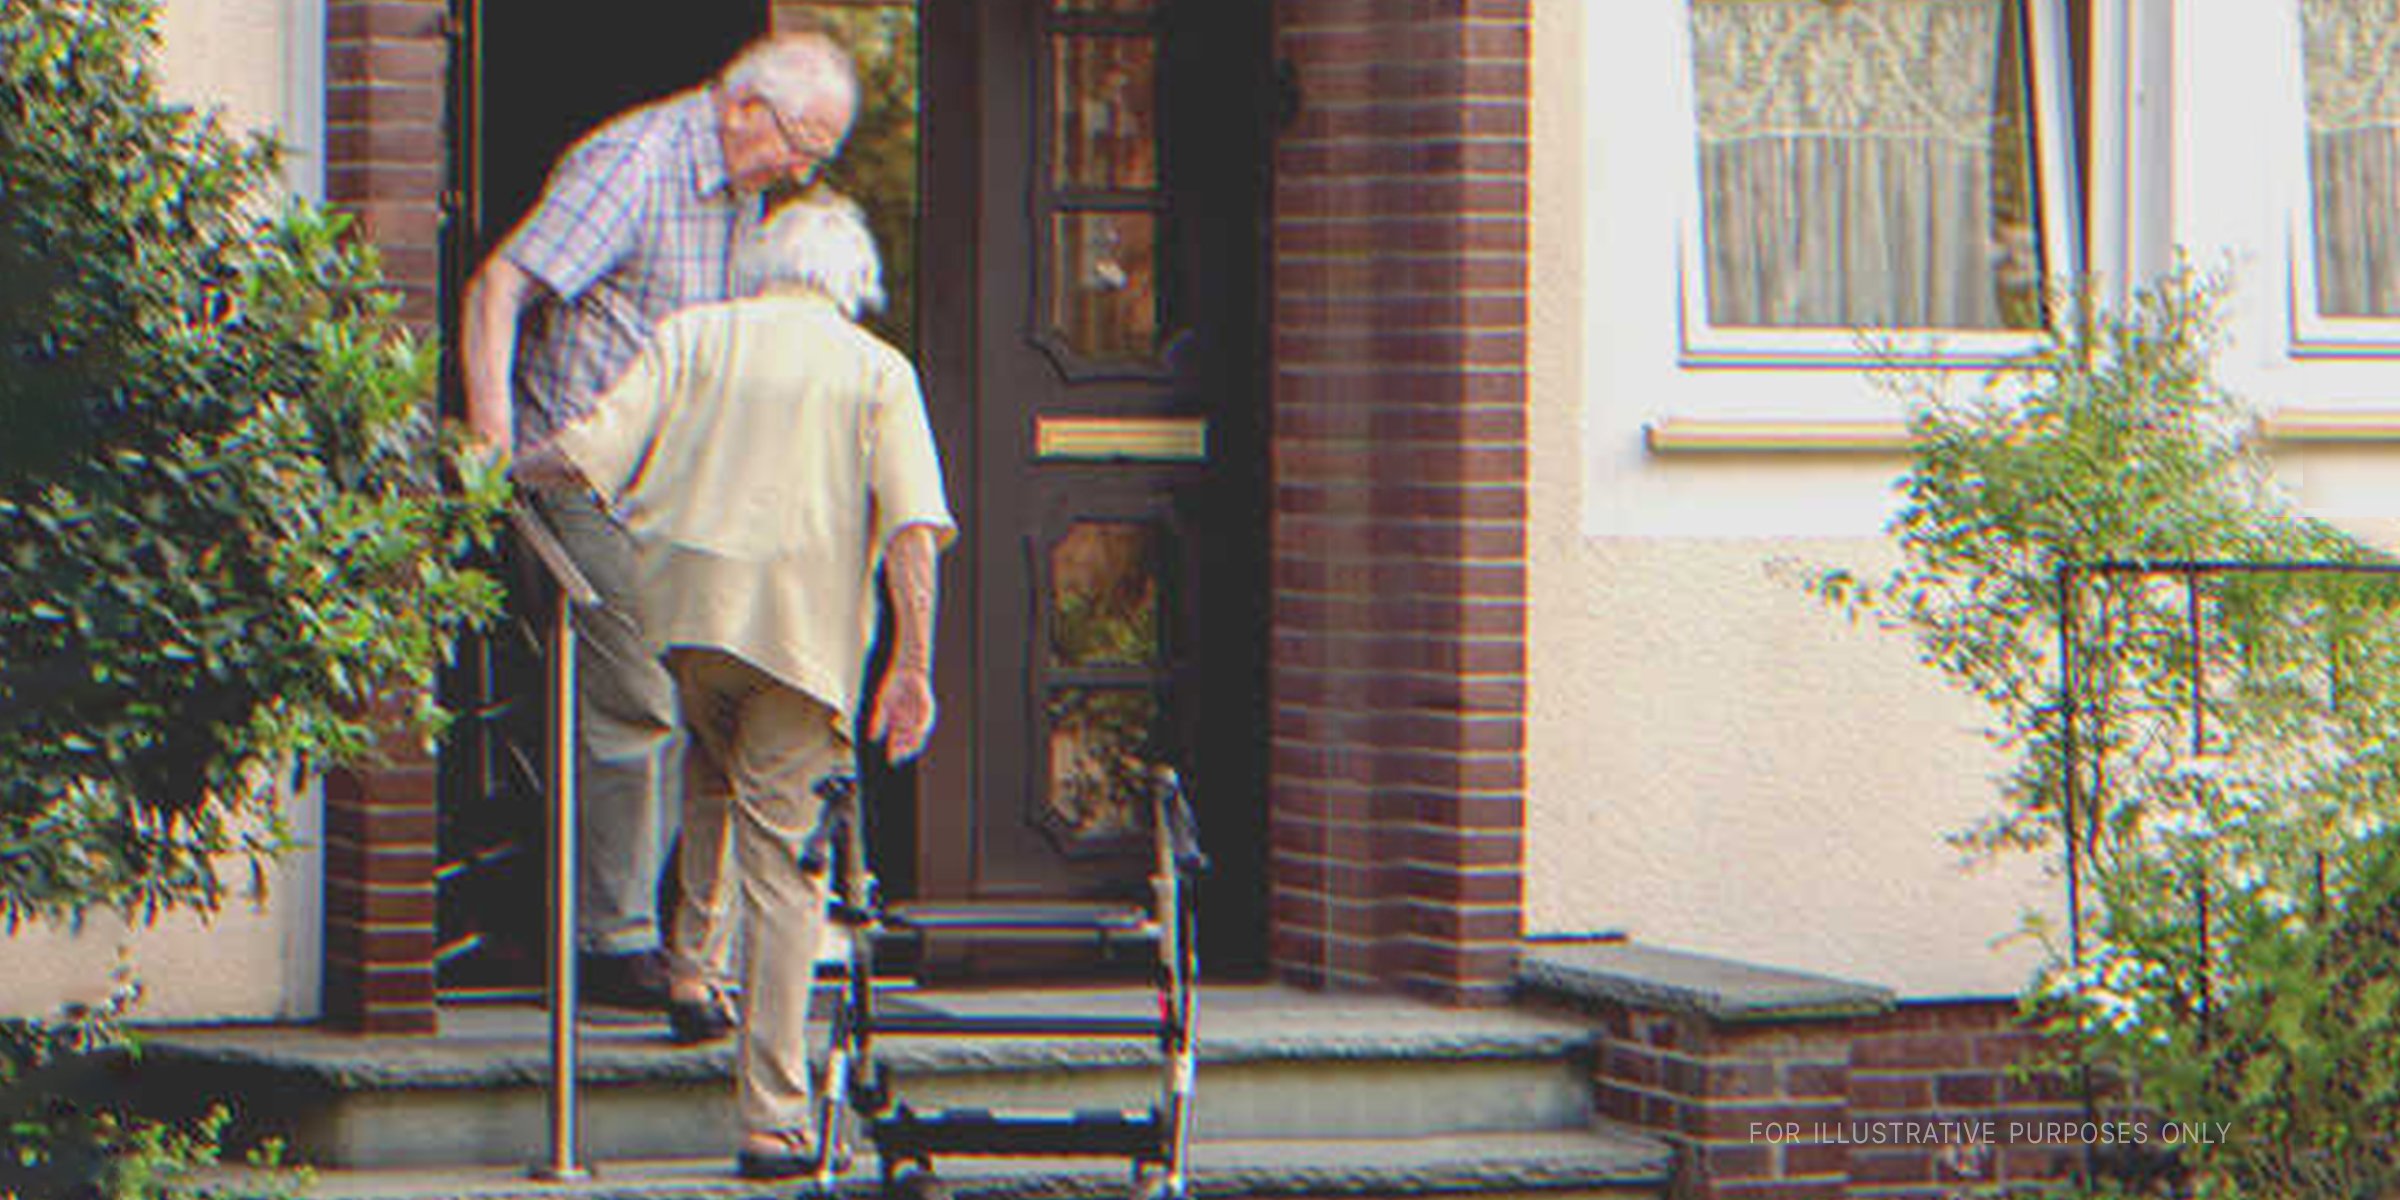 Elderly couple at doorway | Source: Shutterstock 